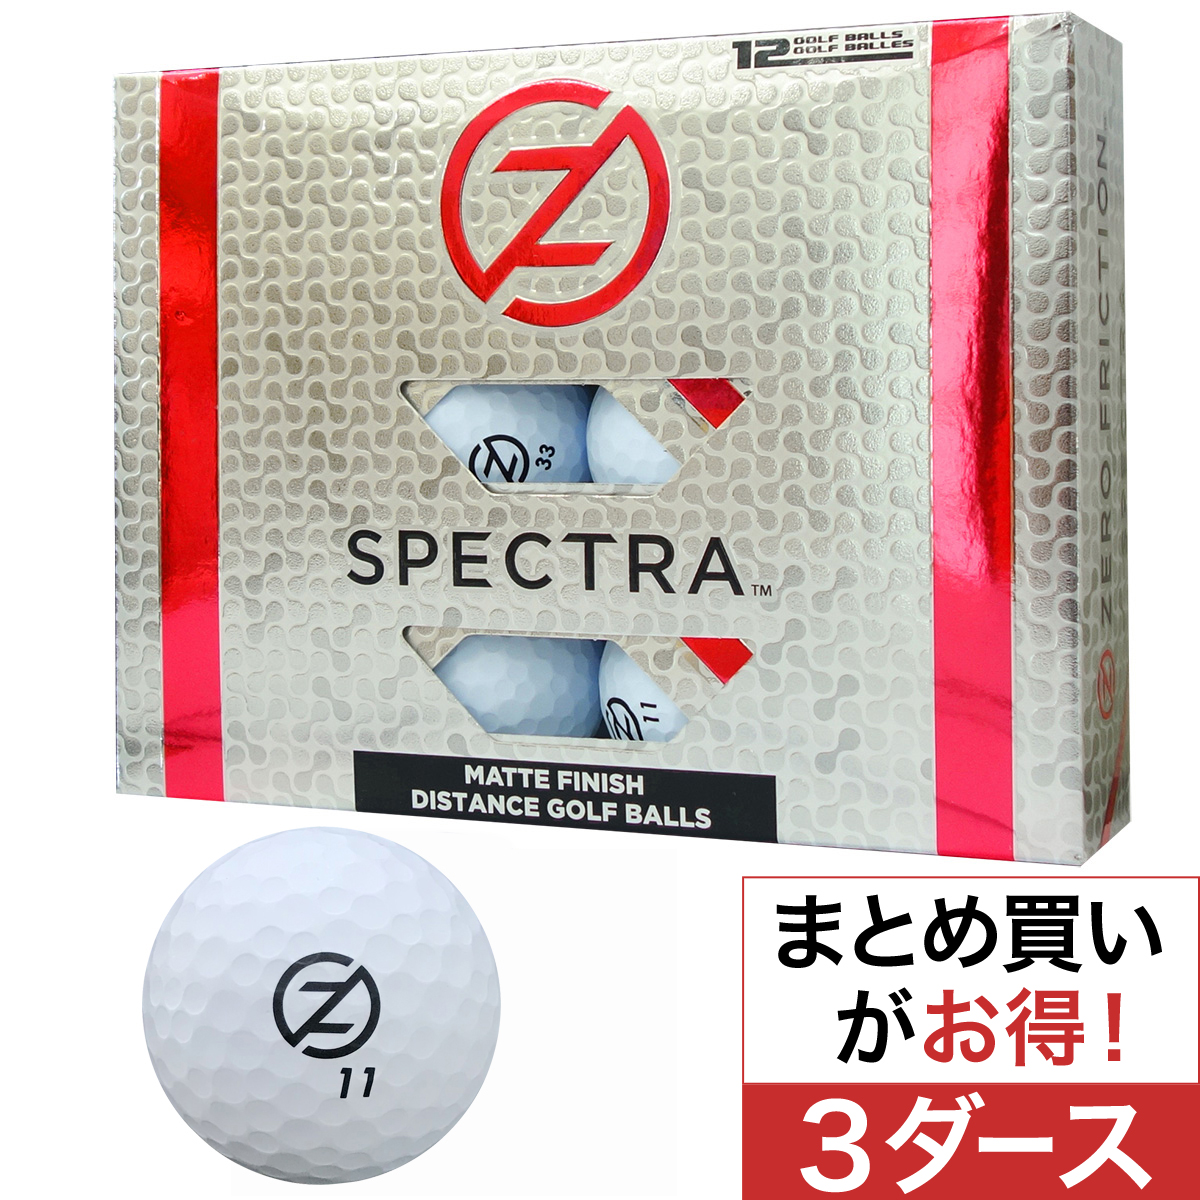  スペクトラ ボール 3ダースセット 【USモデル】